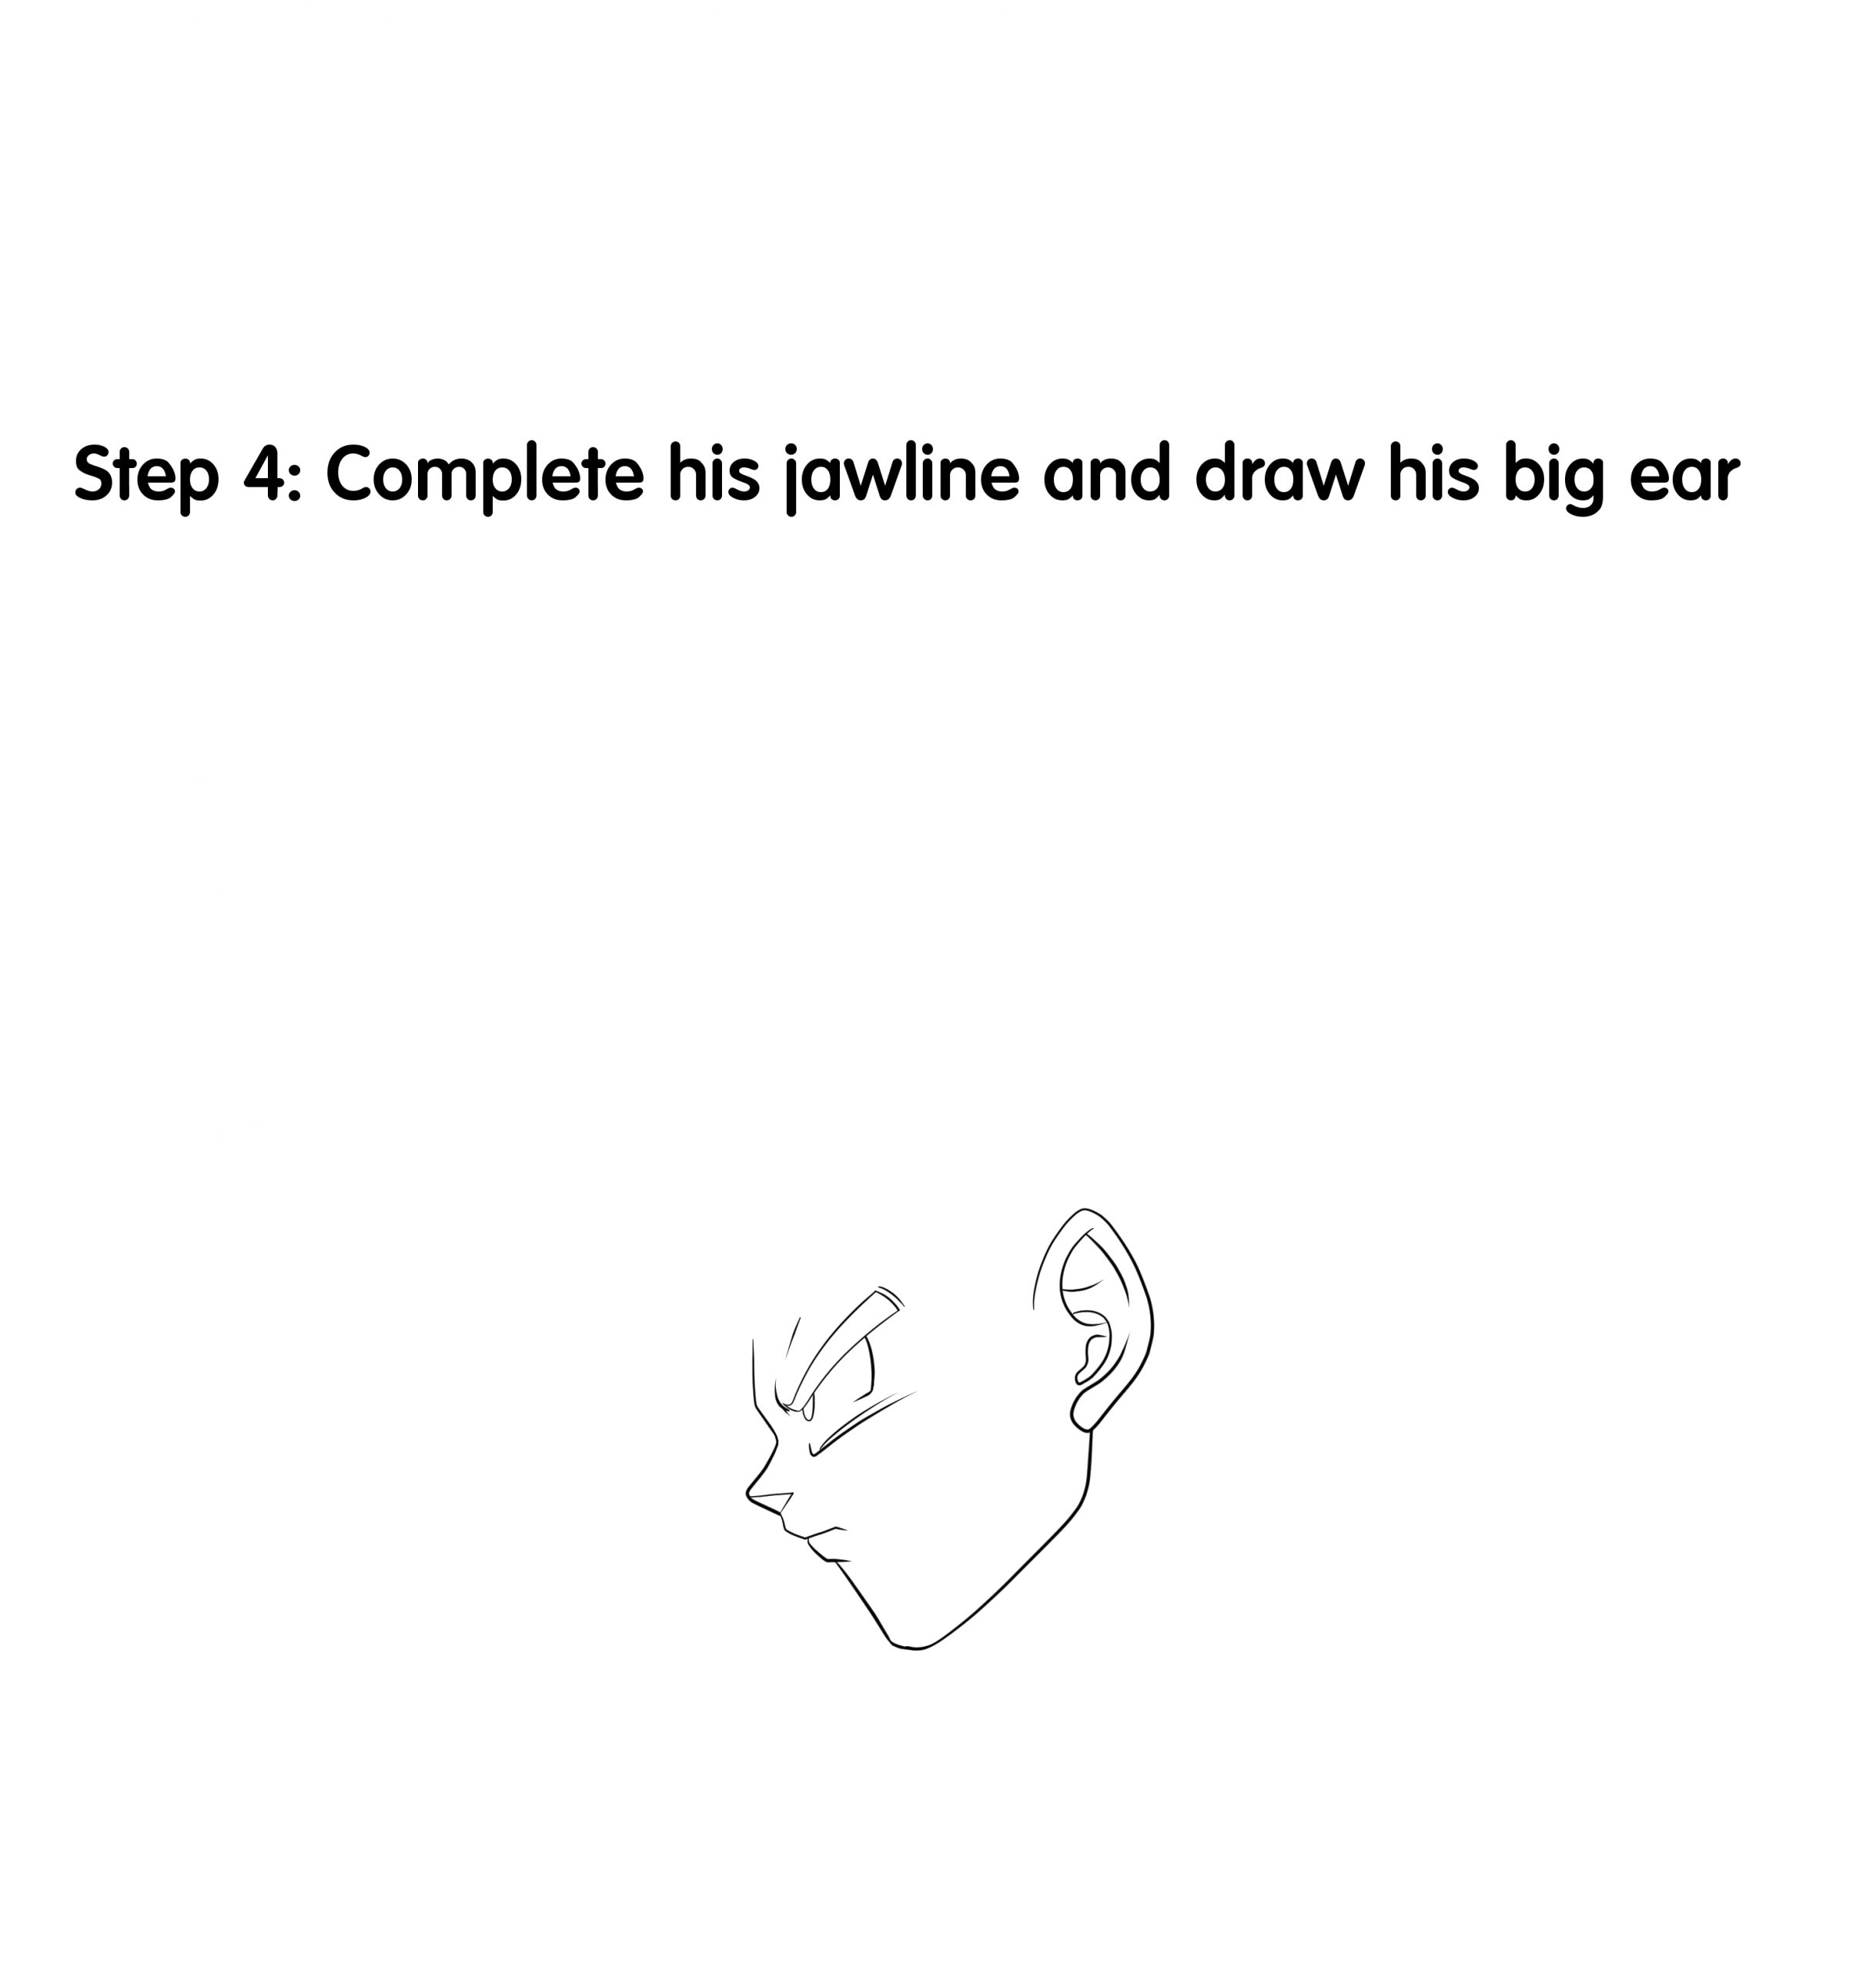 How to Draw Goku Step 4